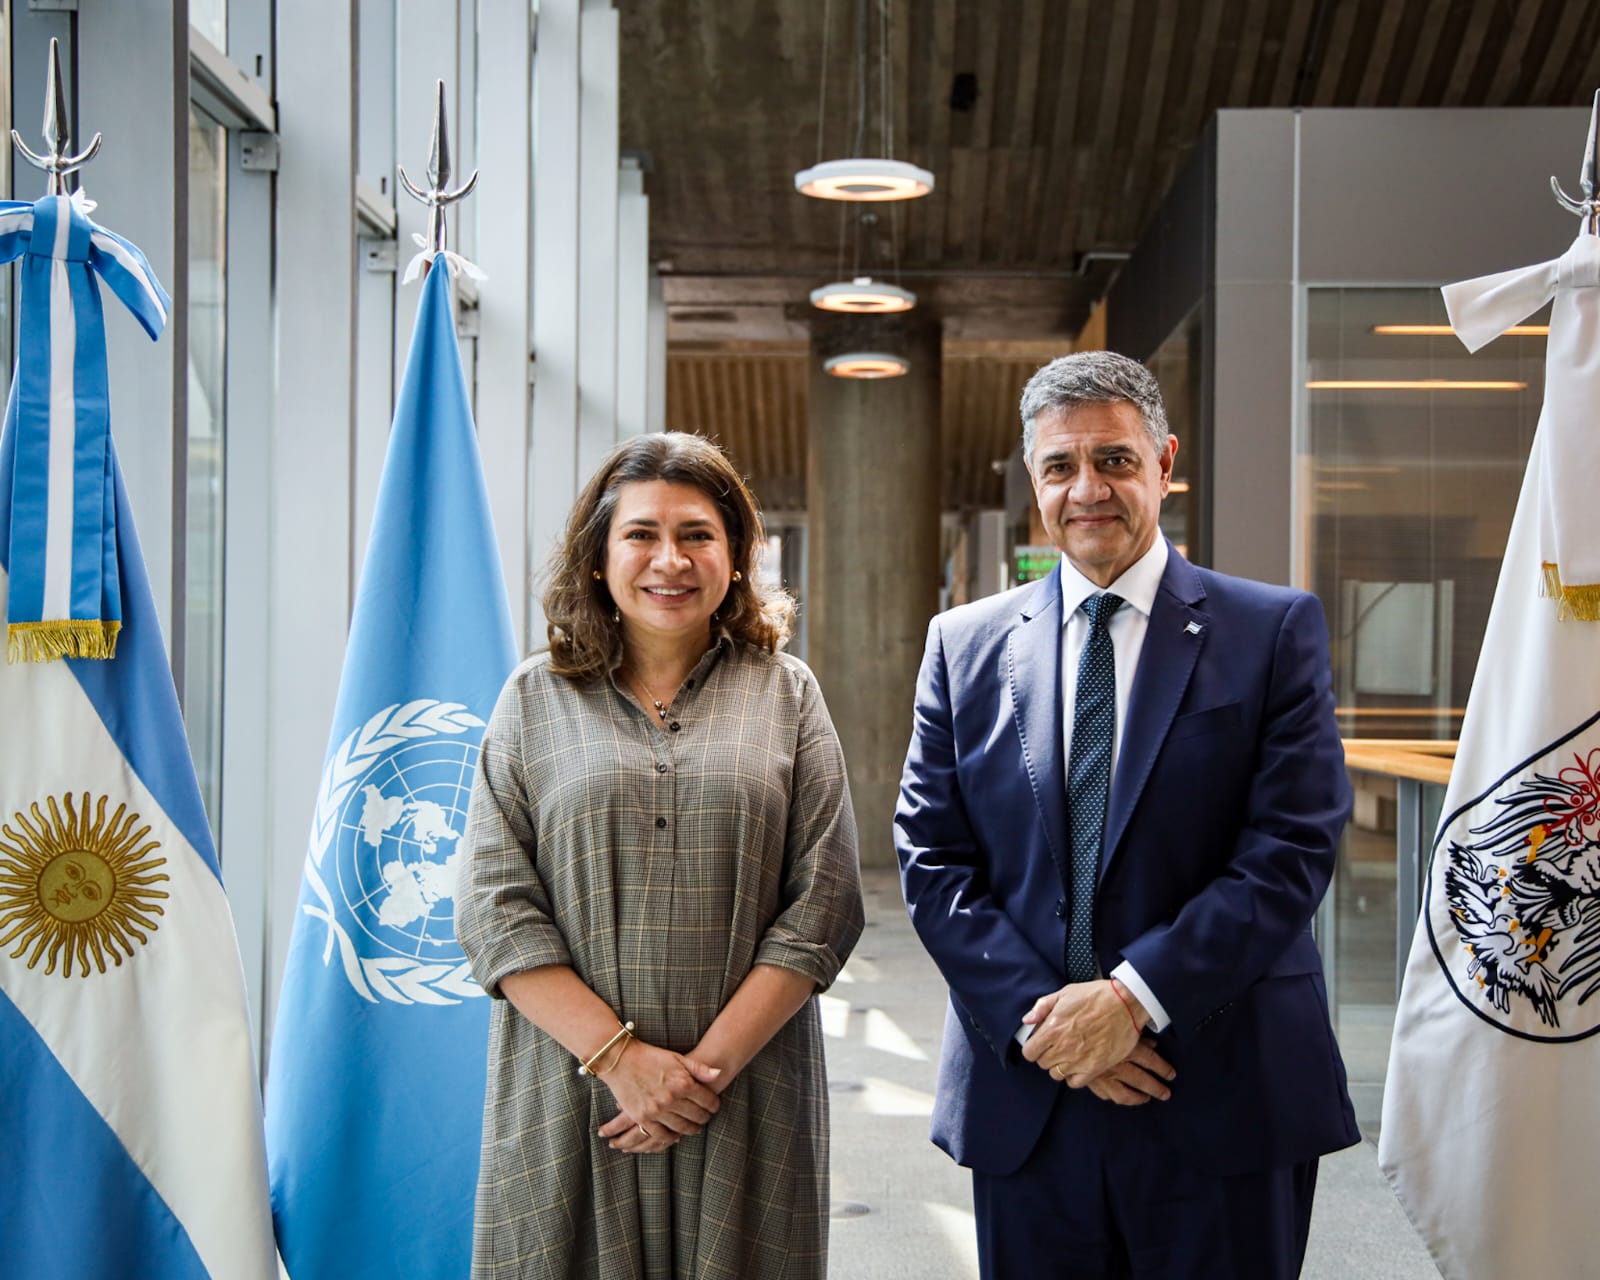 El Jefe de Gobierno, Jorge Macri, mantuvo una reunión de trabajo con representantes de Naciones Unidas